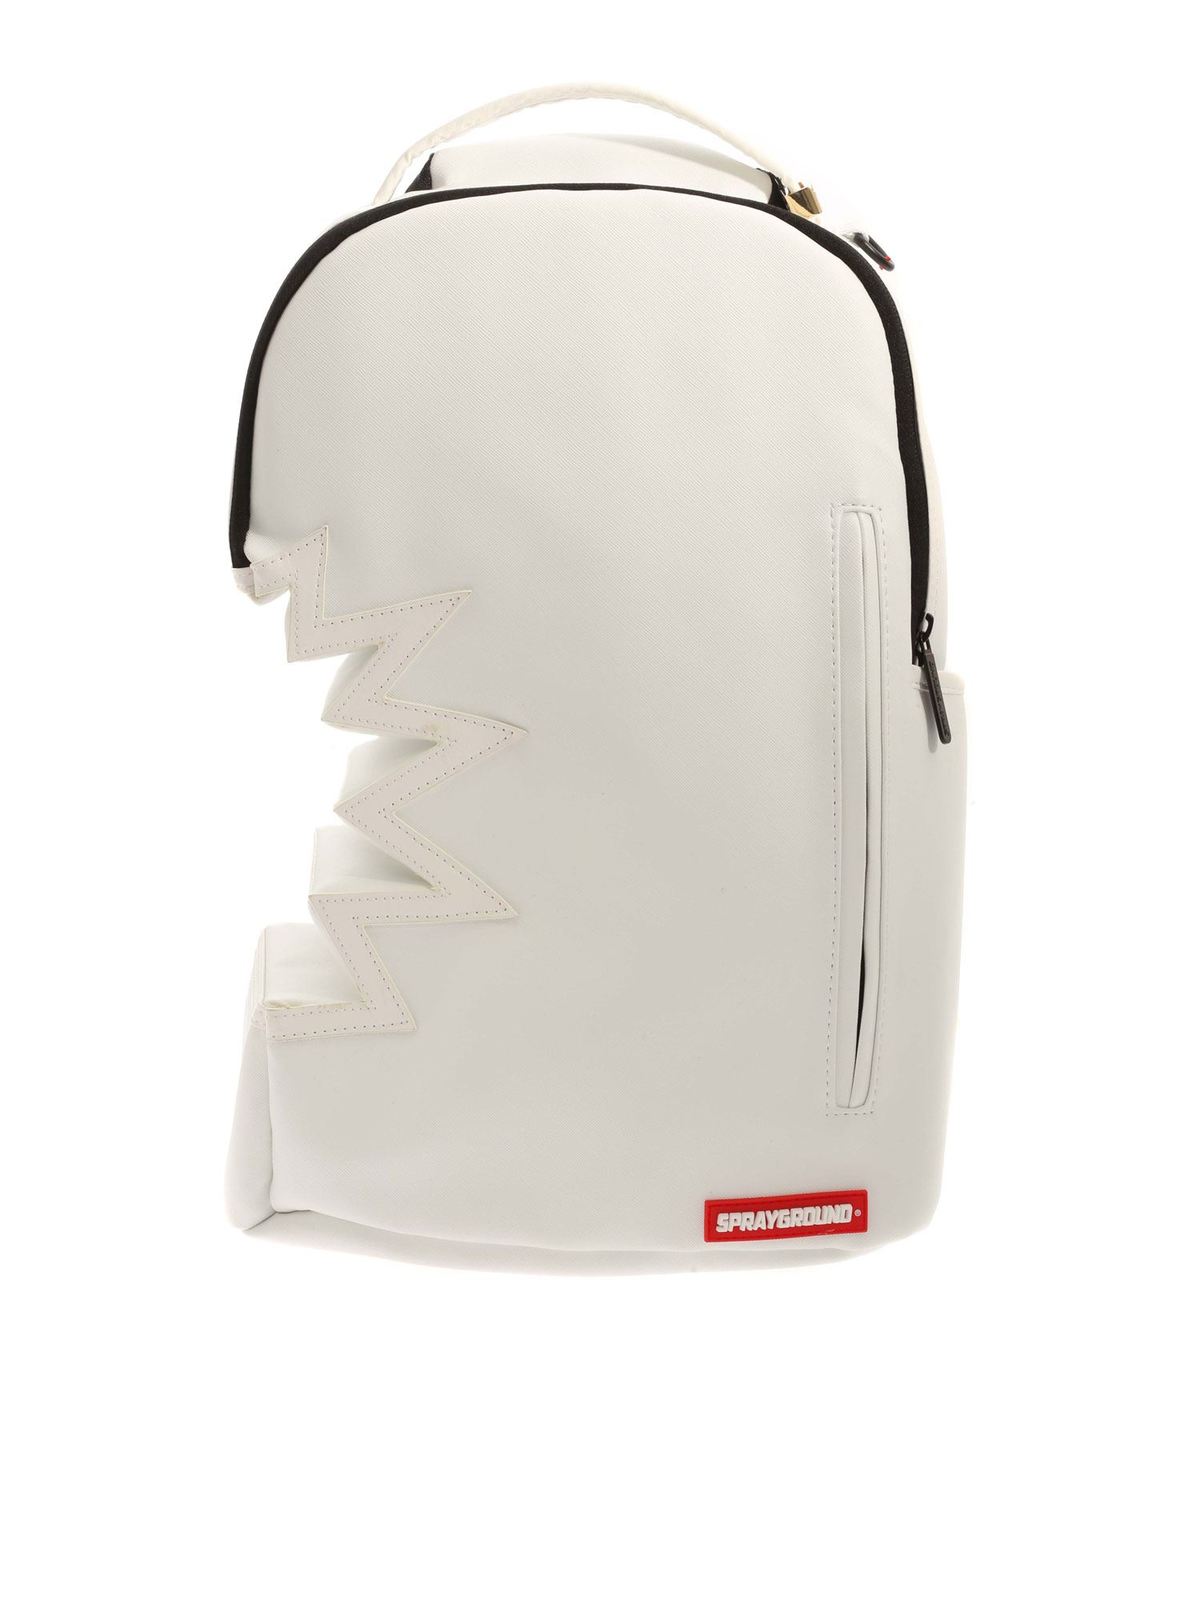 Designer Backpacks for Men  Shark backpack, Backpacks, Sprayground